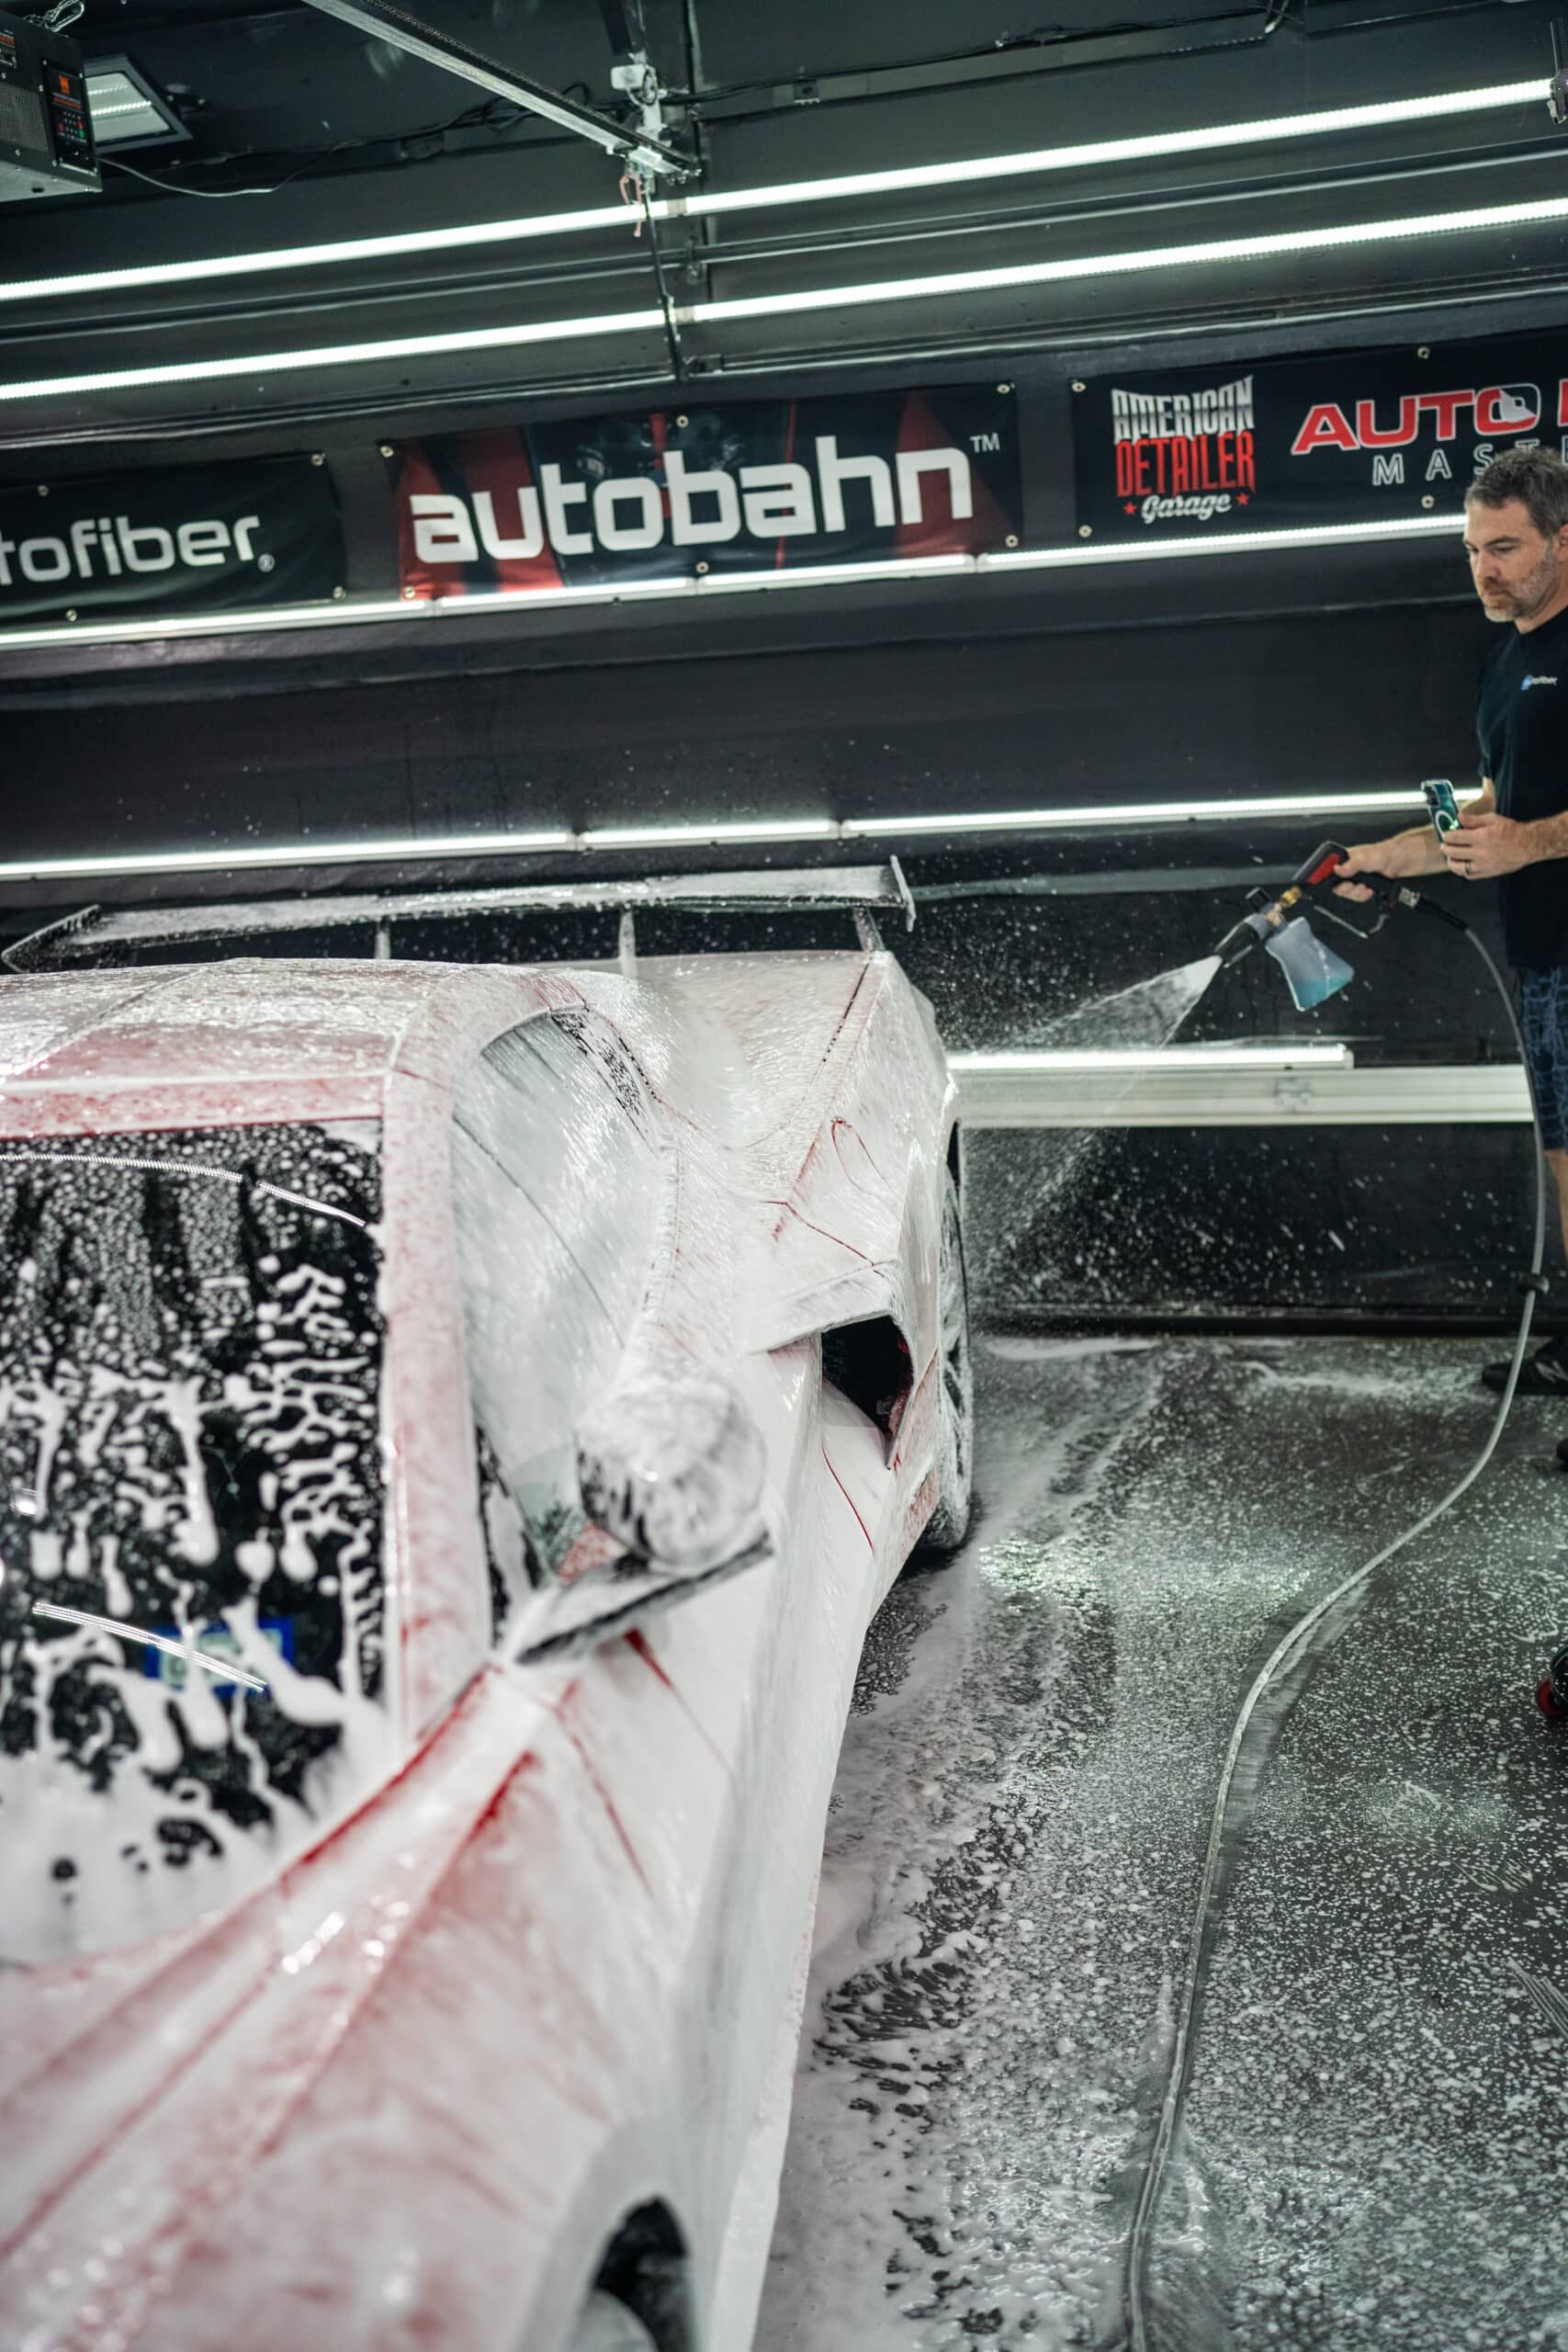 A man is washing a car with foam in a car wash.